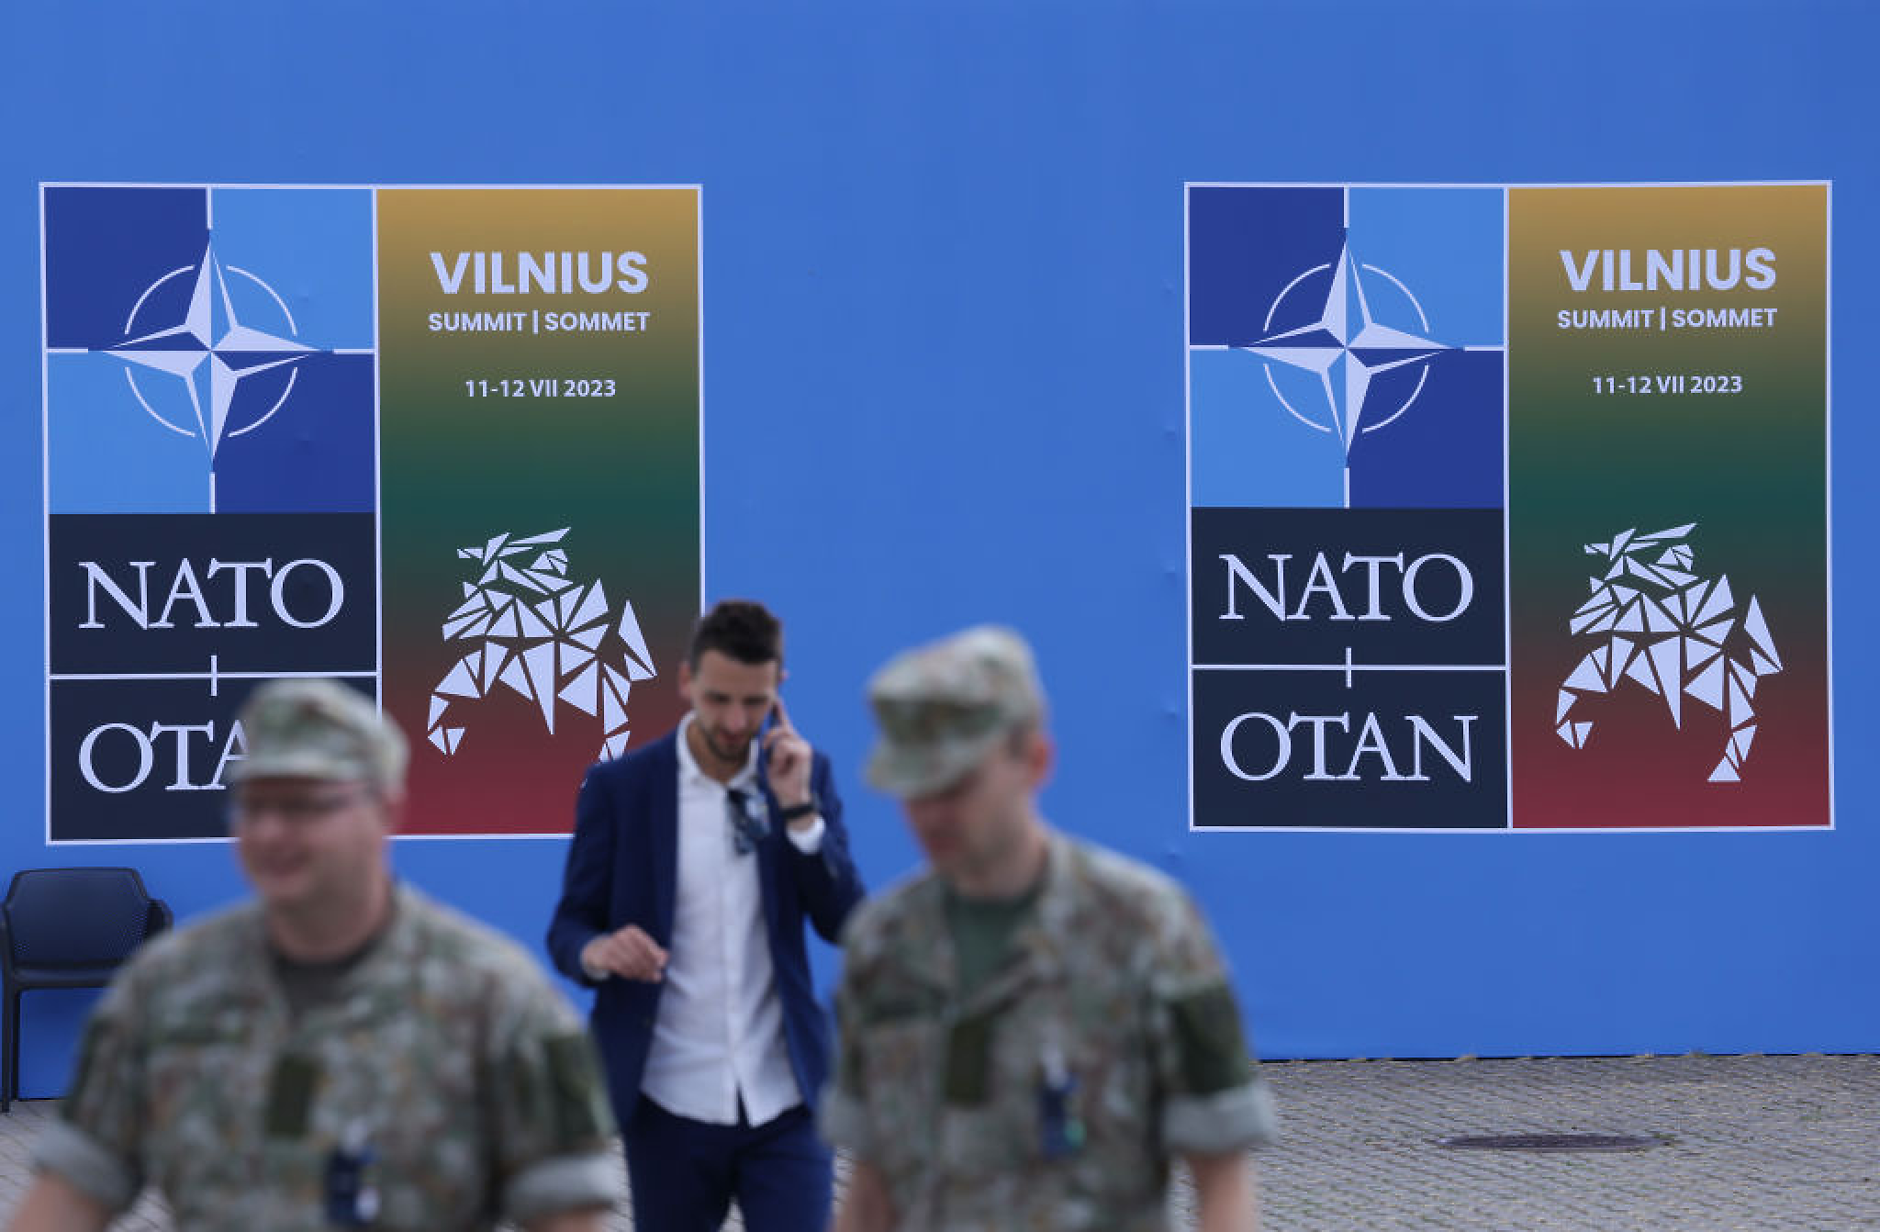 Украйна ще преразгледа стратегията, ако не бъде поканена на срещата на върха на НАТО